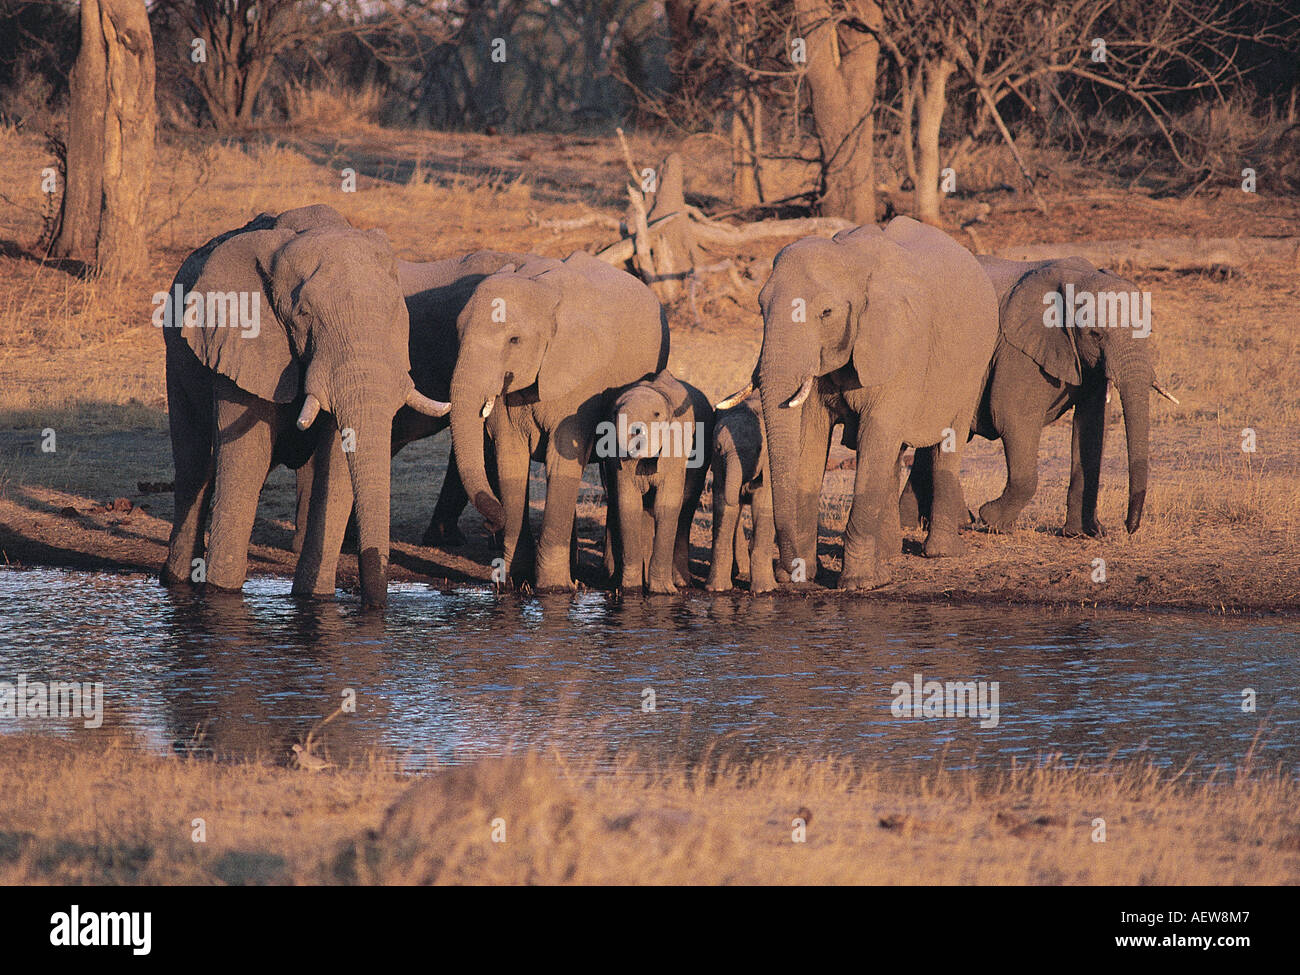 Les éléphants de boire à la Rivière Kwaï Parc National de Chobe au Botswana Afrique du Sud lumière chaude soirée Banque D'Images